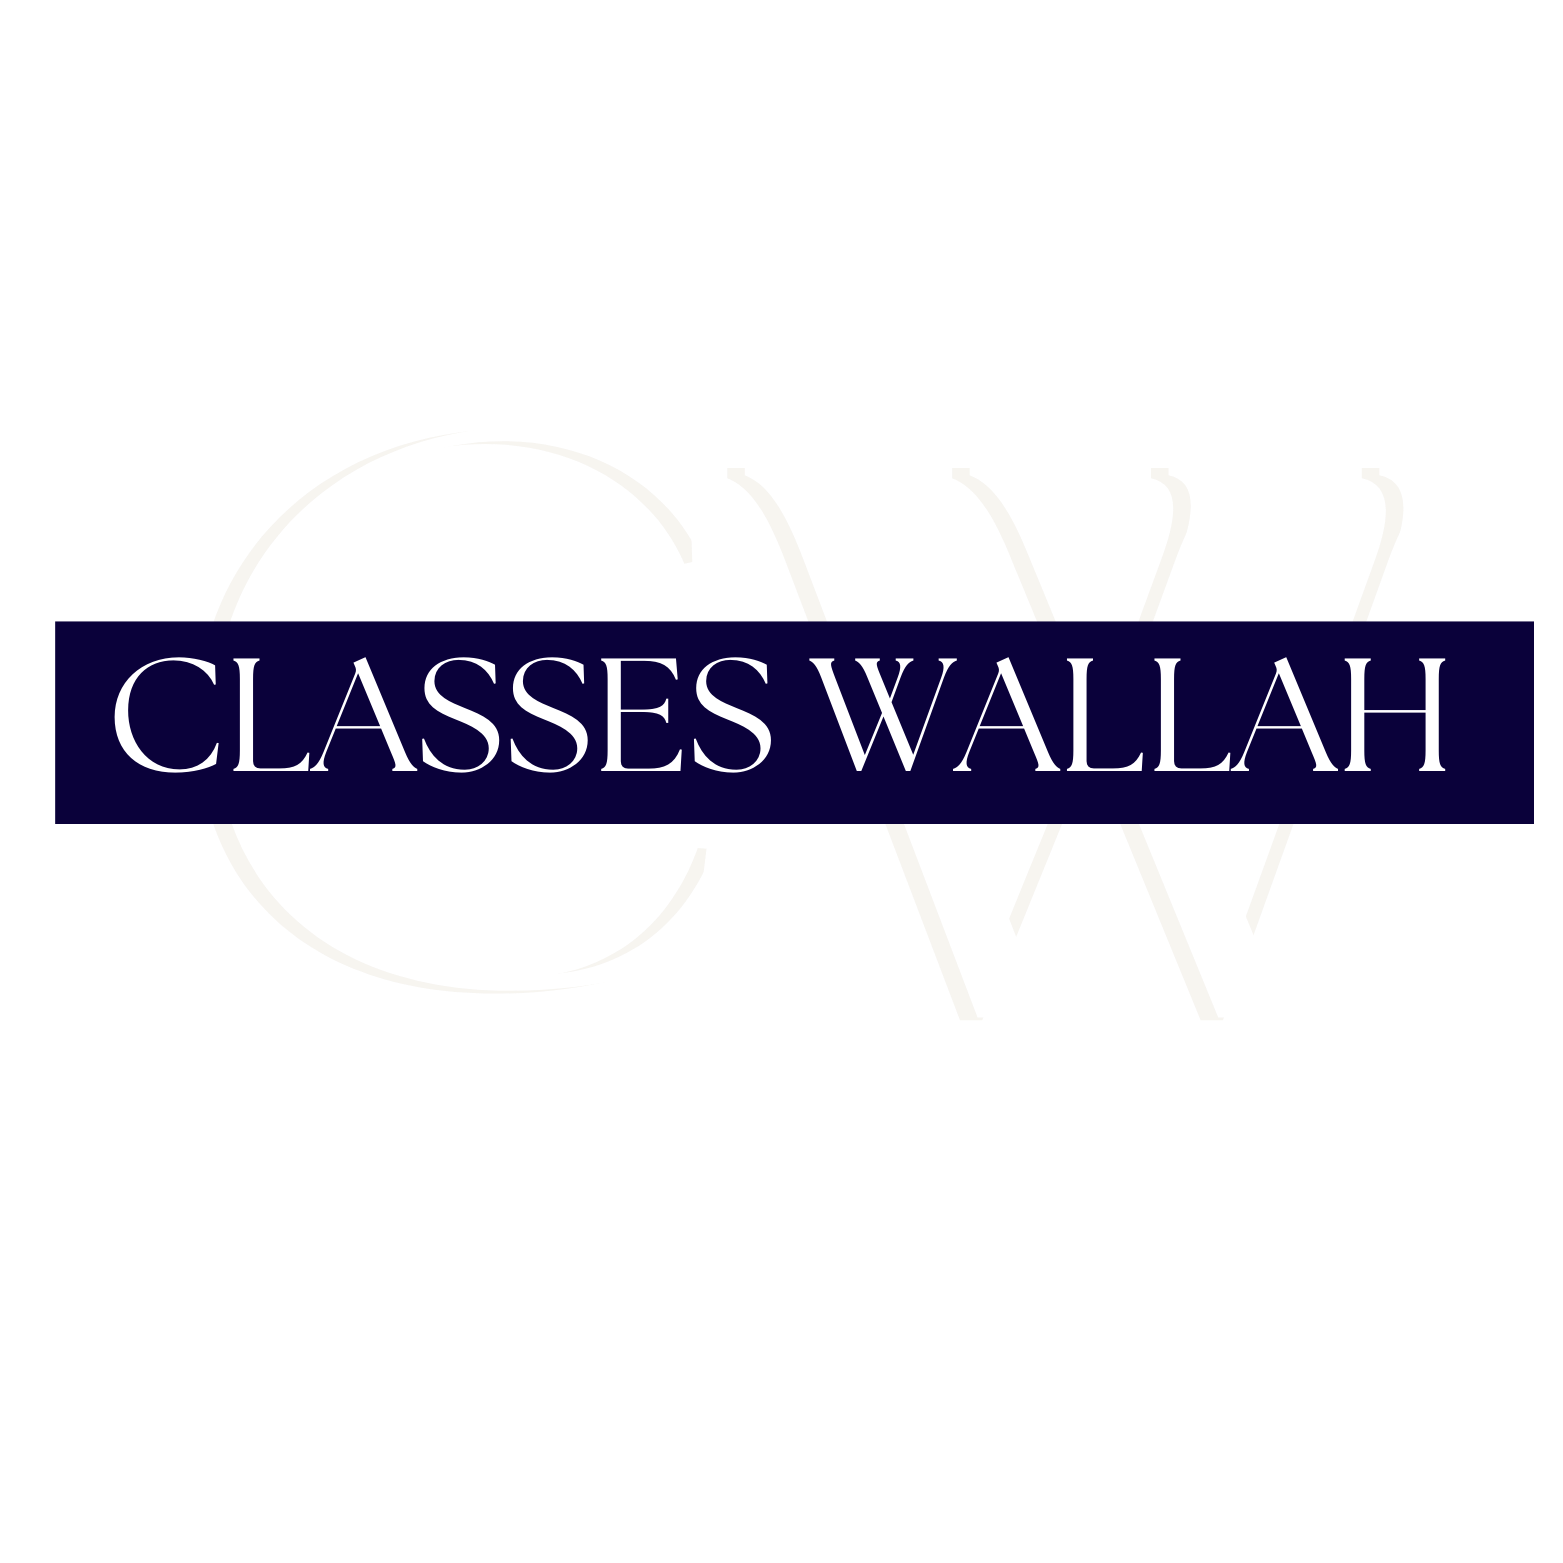 Classes Wallah